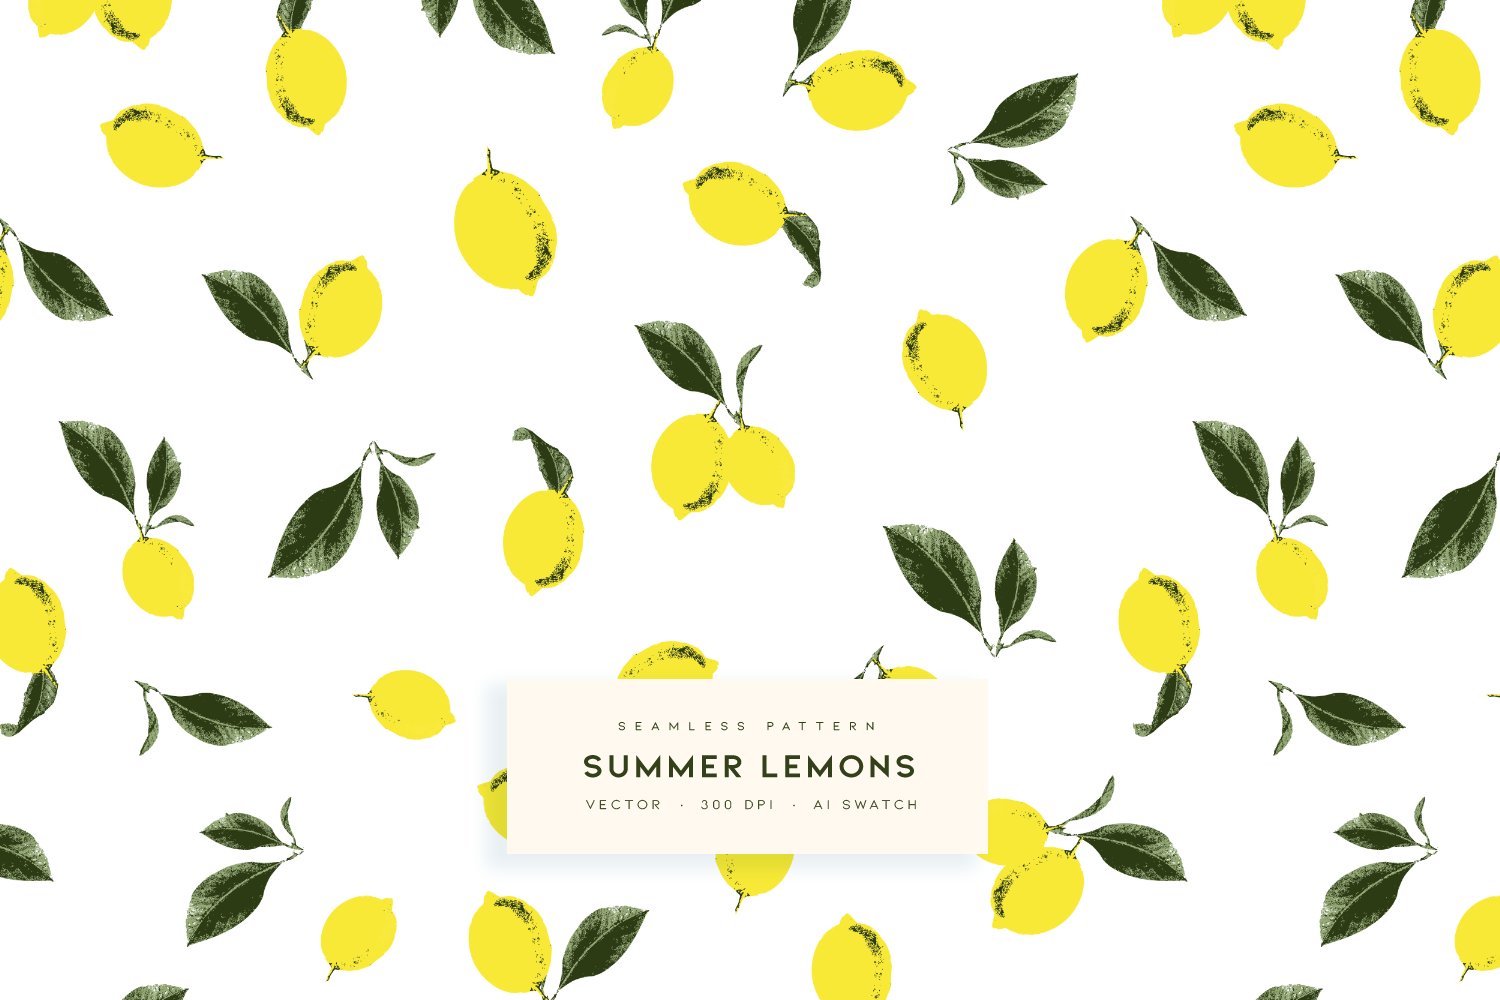 Summer Lemons | Vector Pattern cover image.